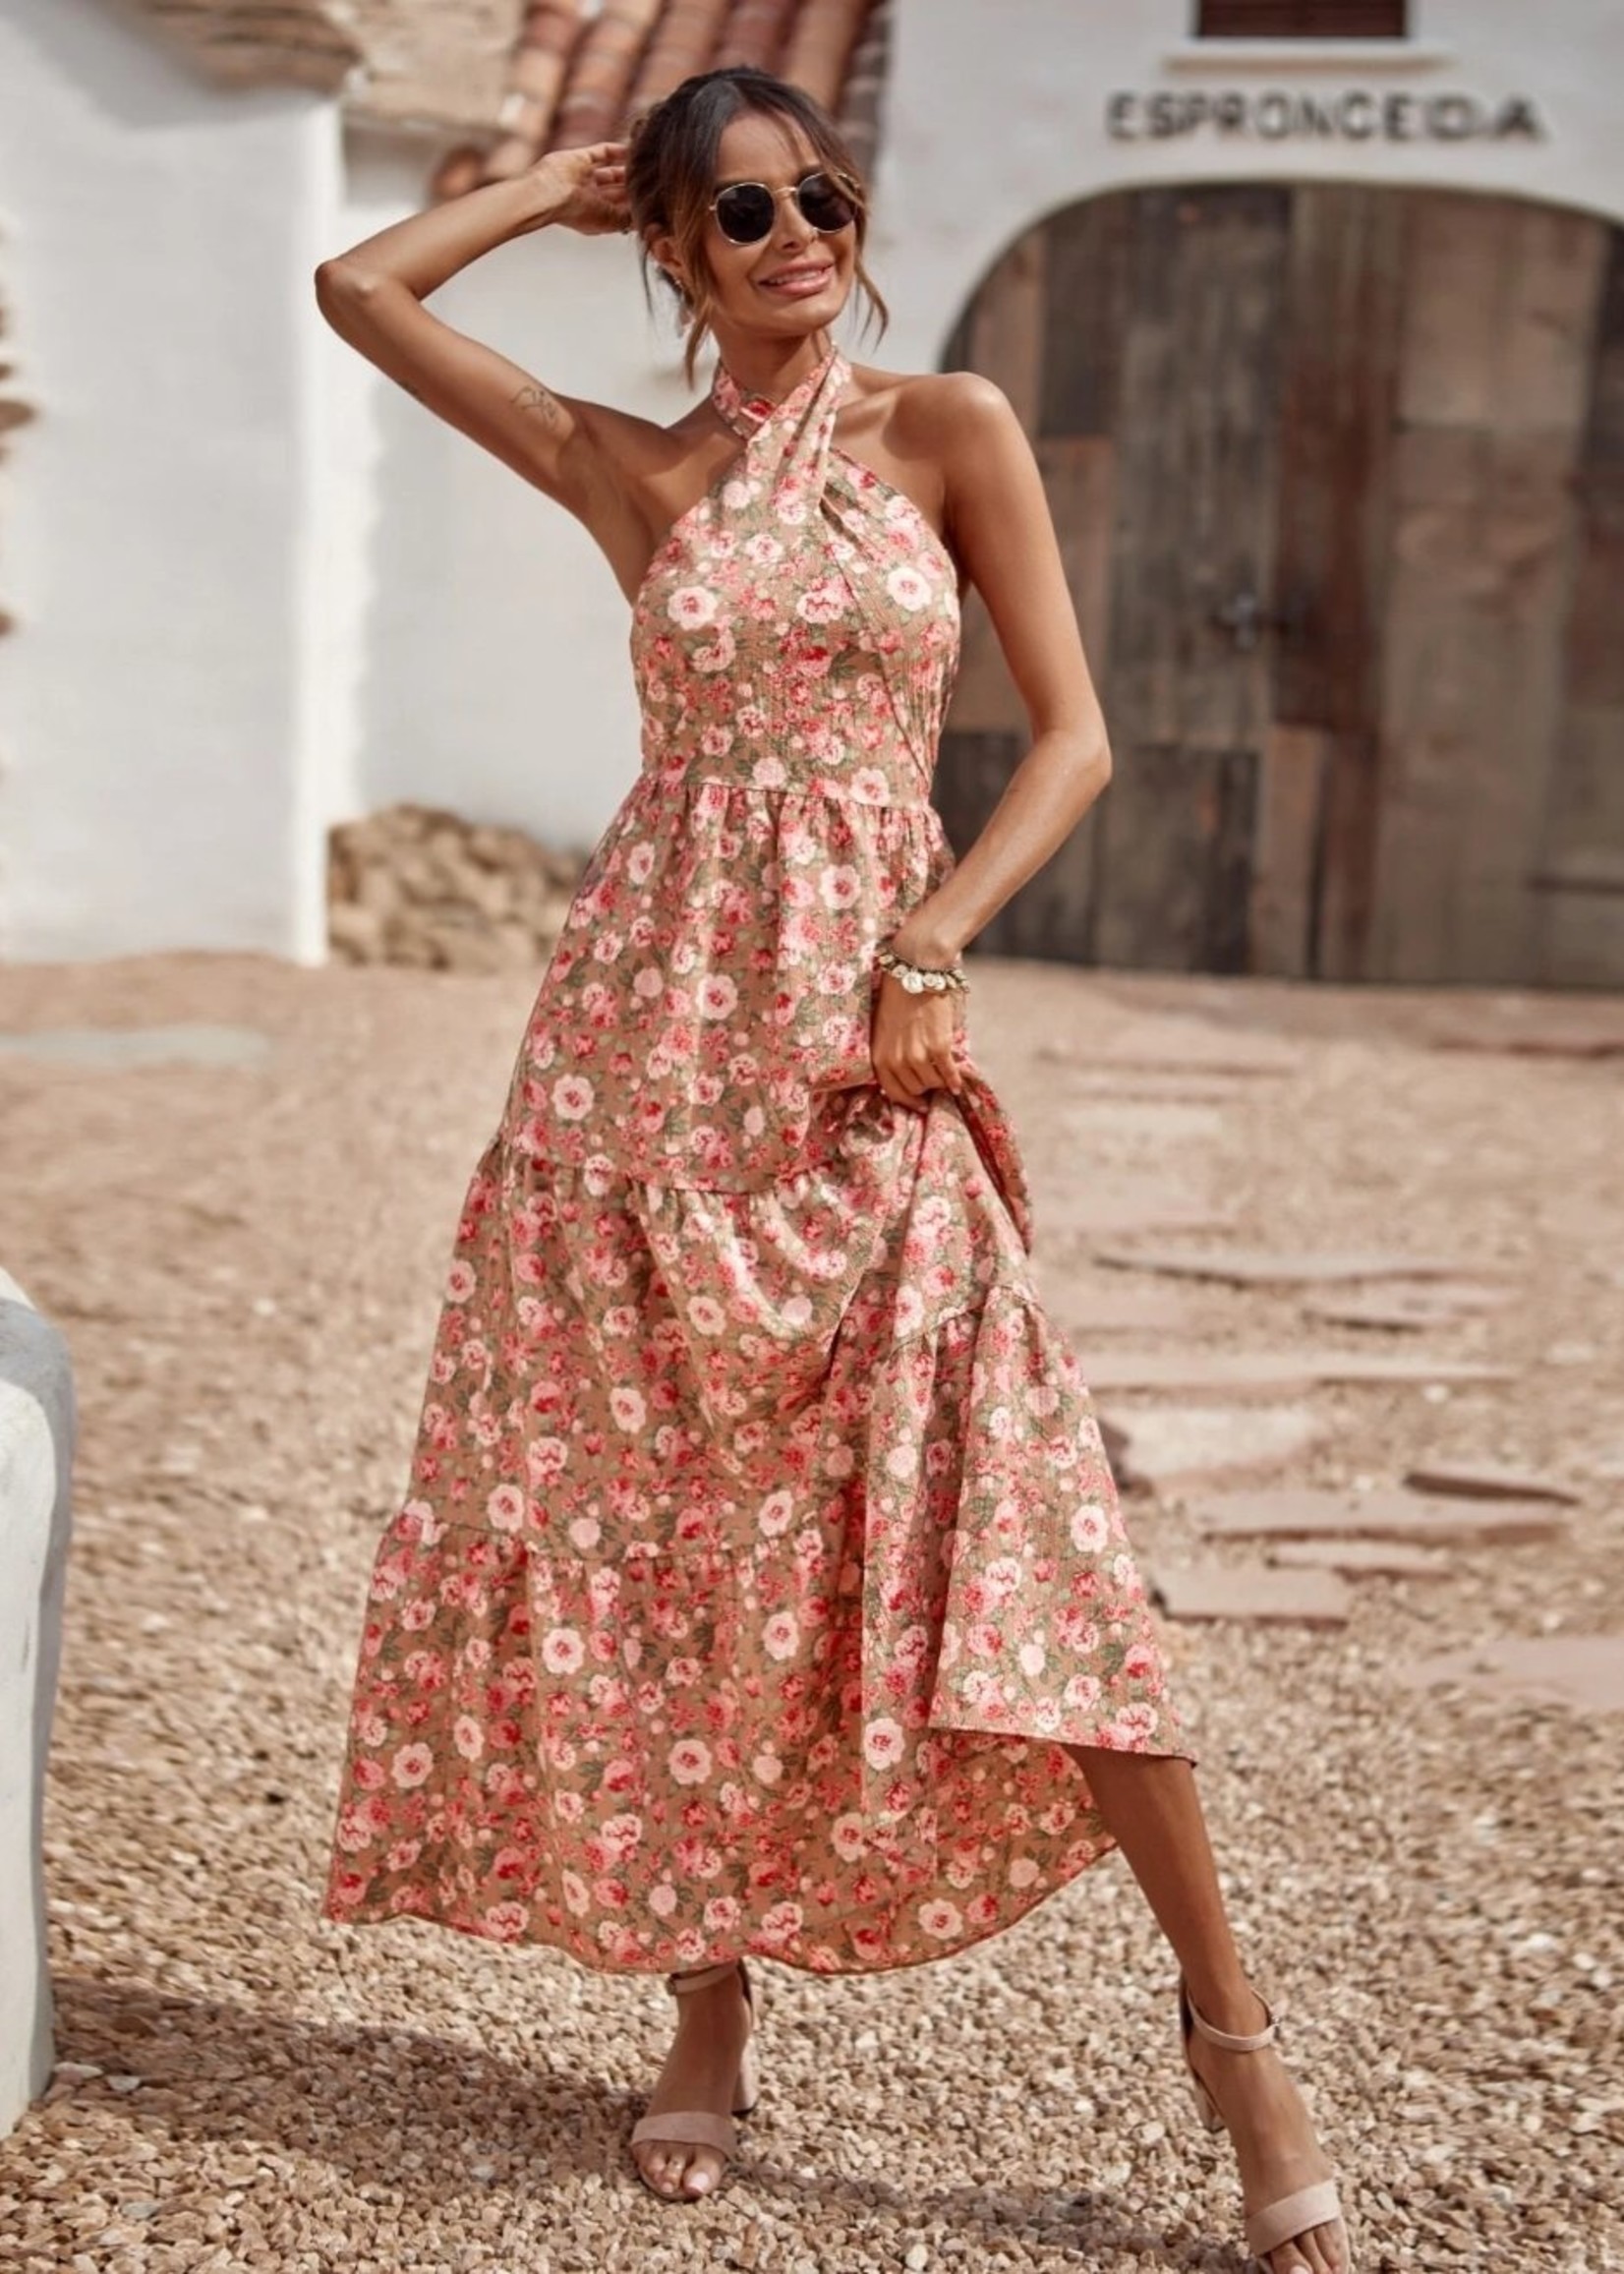 Plak opnieuw Lenen Assimileren Trendy lange jurk met mooie vetersluiting - Mode Outlet Rotterdam